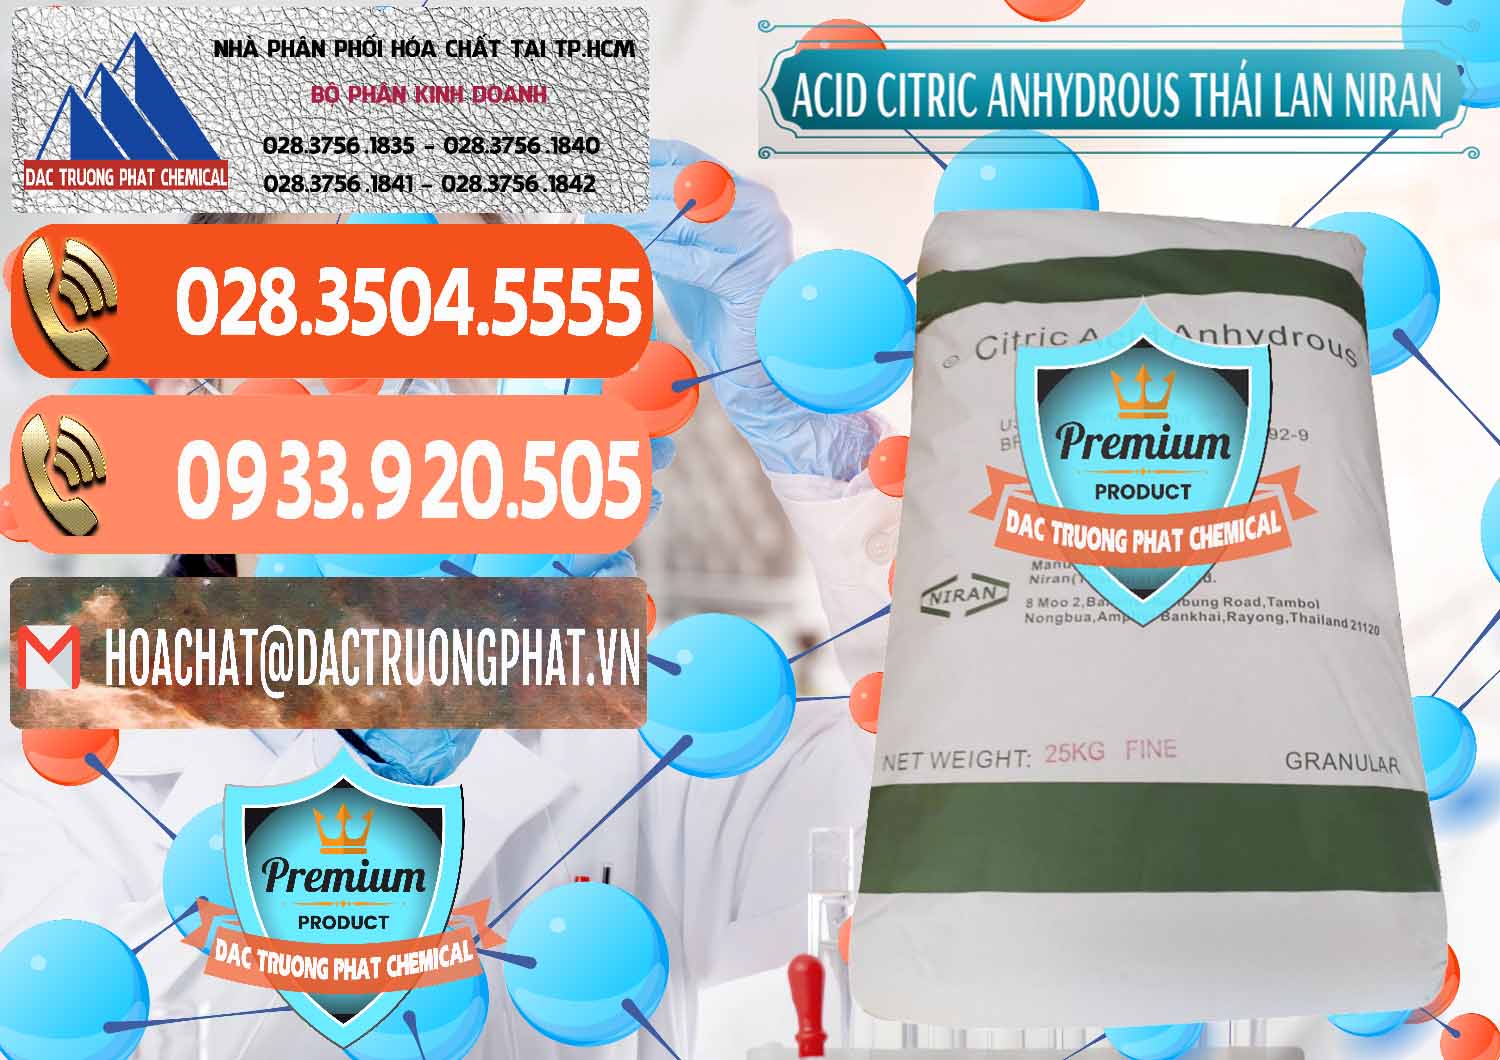 Nhập khẩu & bán Acid Citric - Axit Citric Anhydrous - Thái Lan Niran - 0231 - Chuyên kinh doanh & phân phối hóa chất tại TP.HCM - hoachatmientay.com